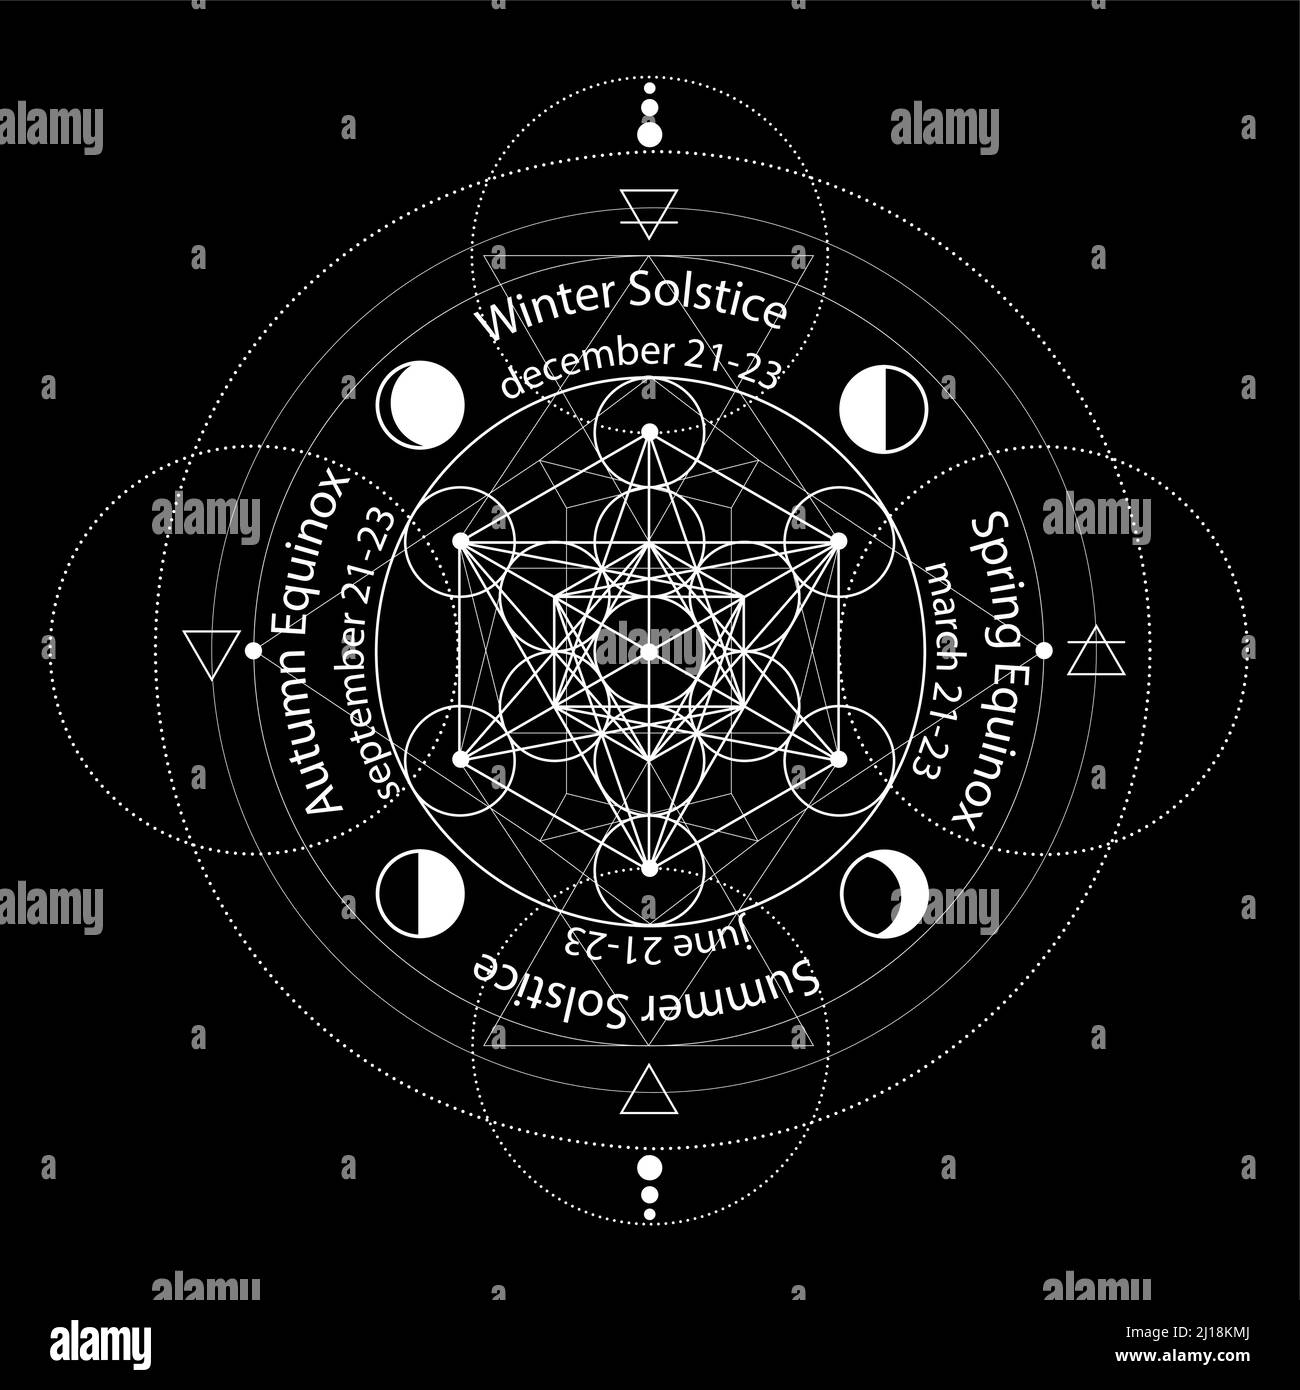 cerchio di solstice ed equinox stilizzato come disegno geometrico lineare con linee sottili bianche su sfondo nero con date e nomi, quattro elementi, aria, Illustrazione Vettoriale